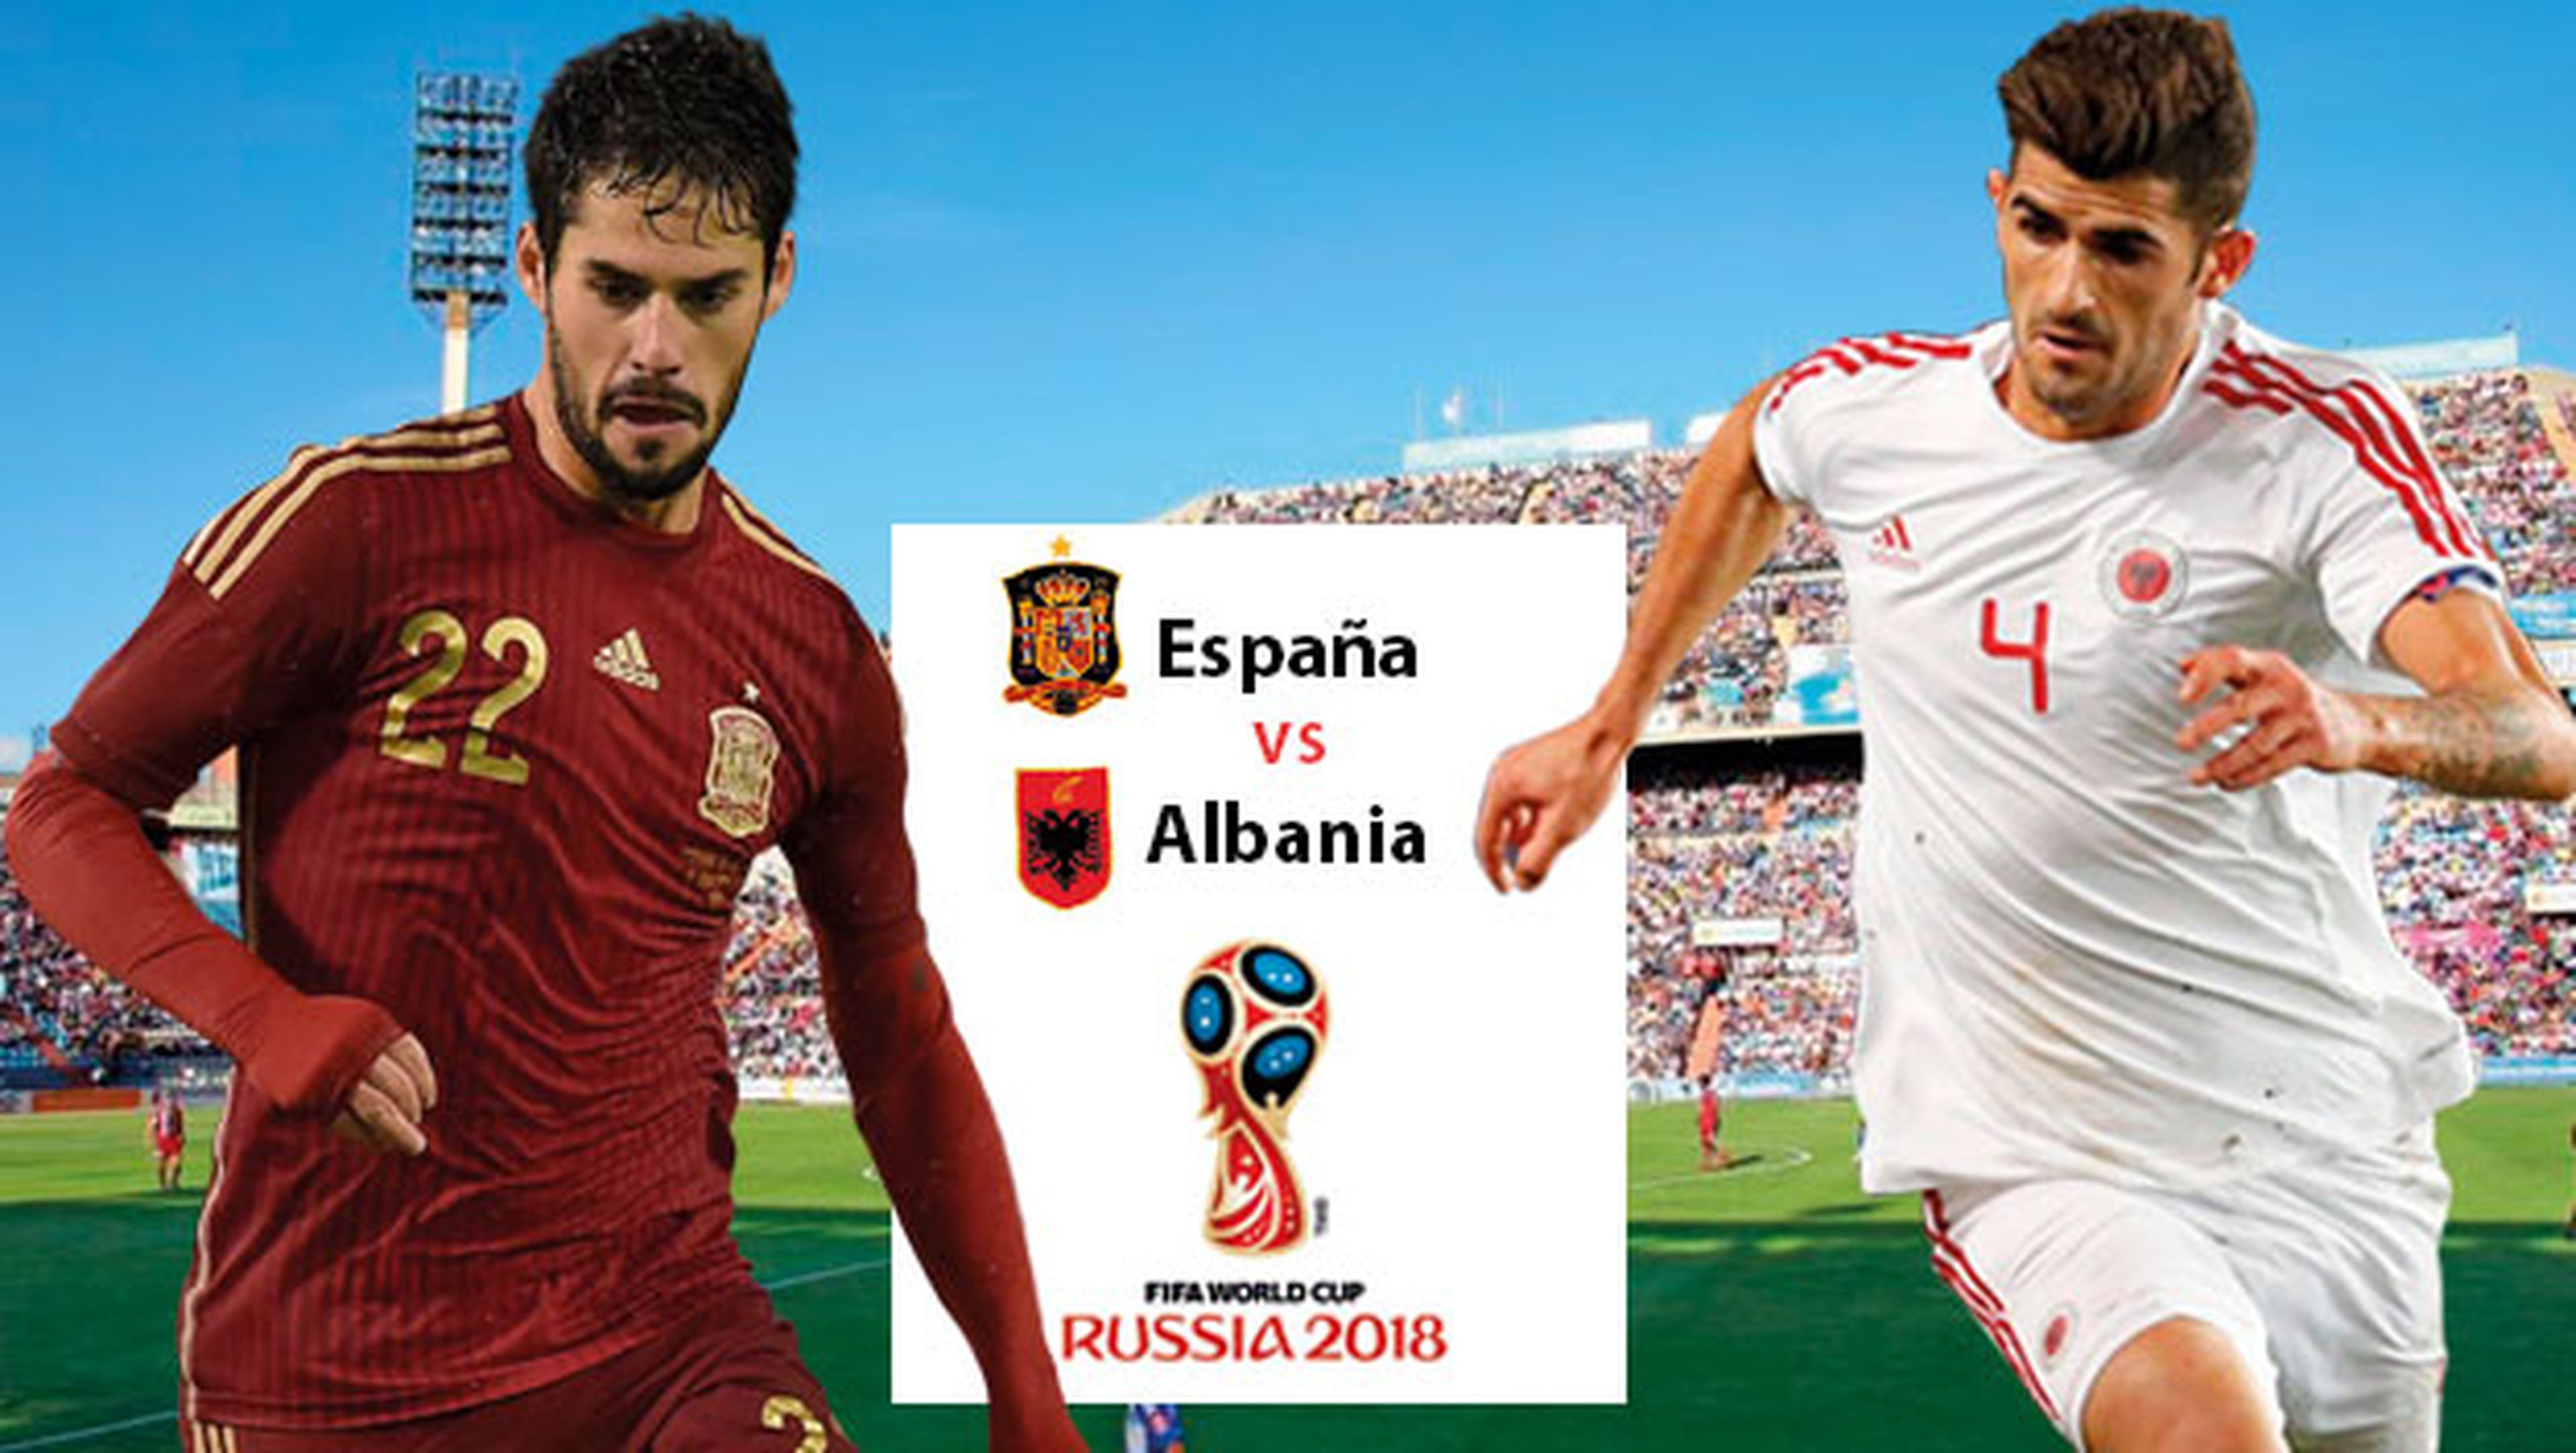 A qué hora y en qué canal ver en directo el España vs Albania de fútbol.